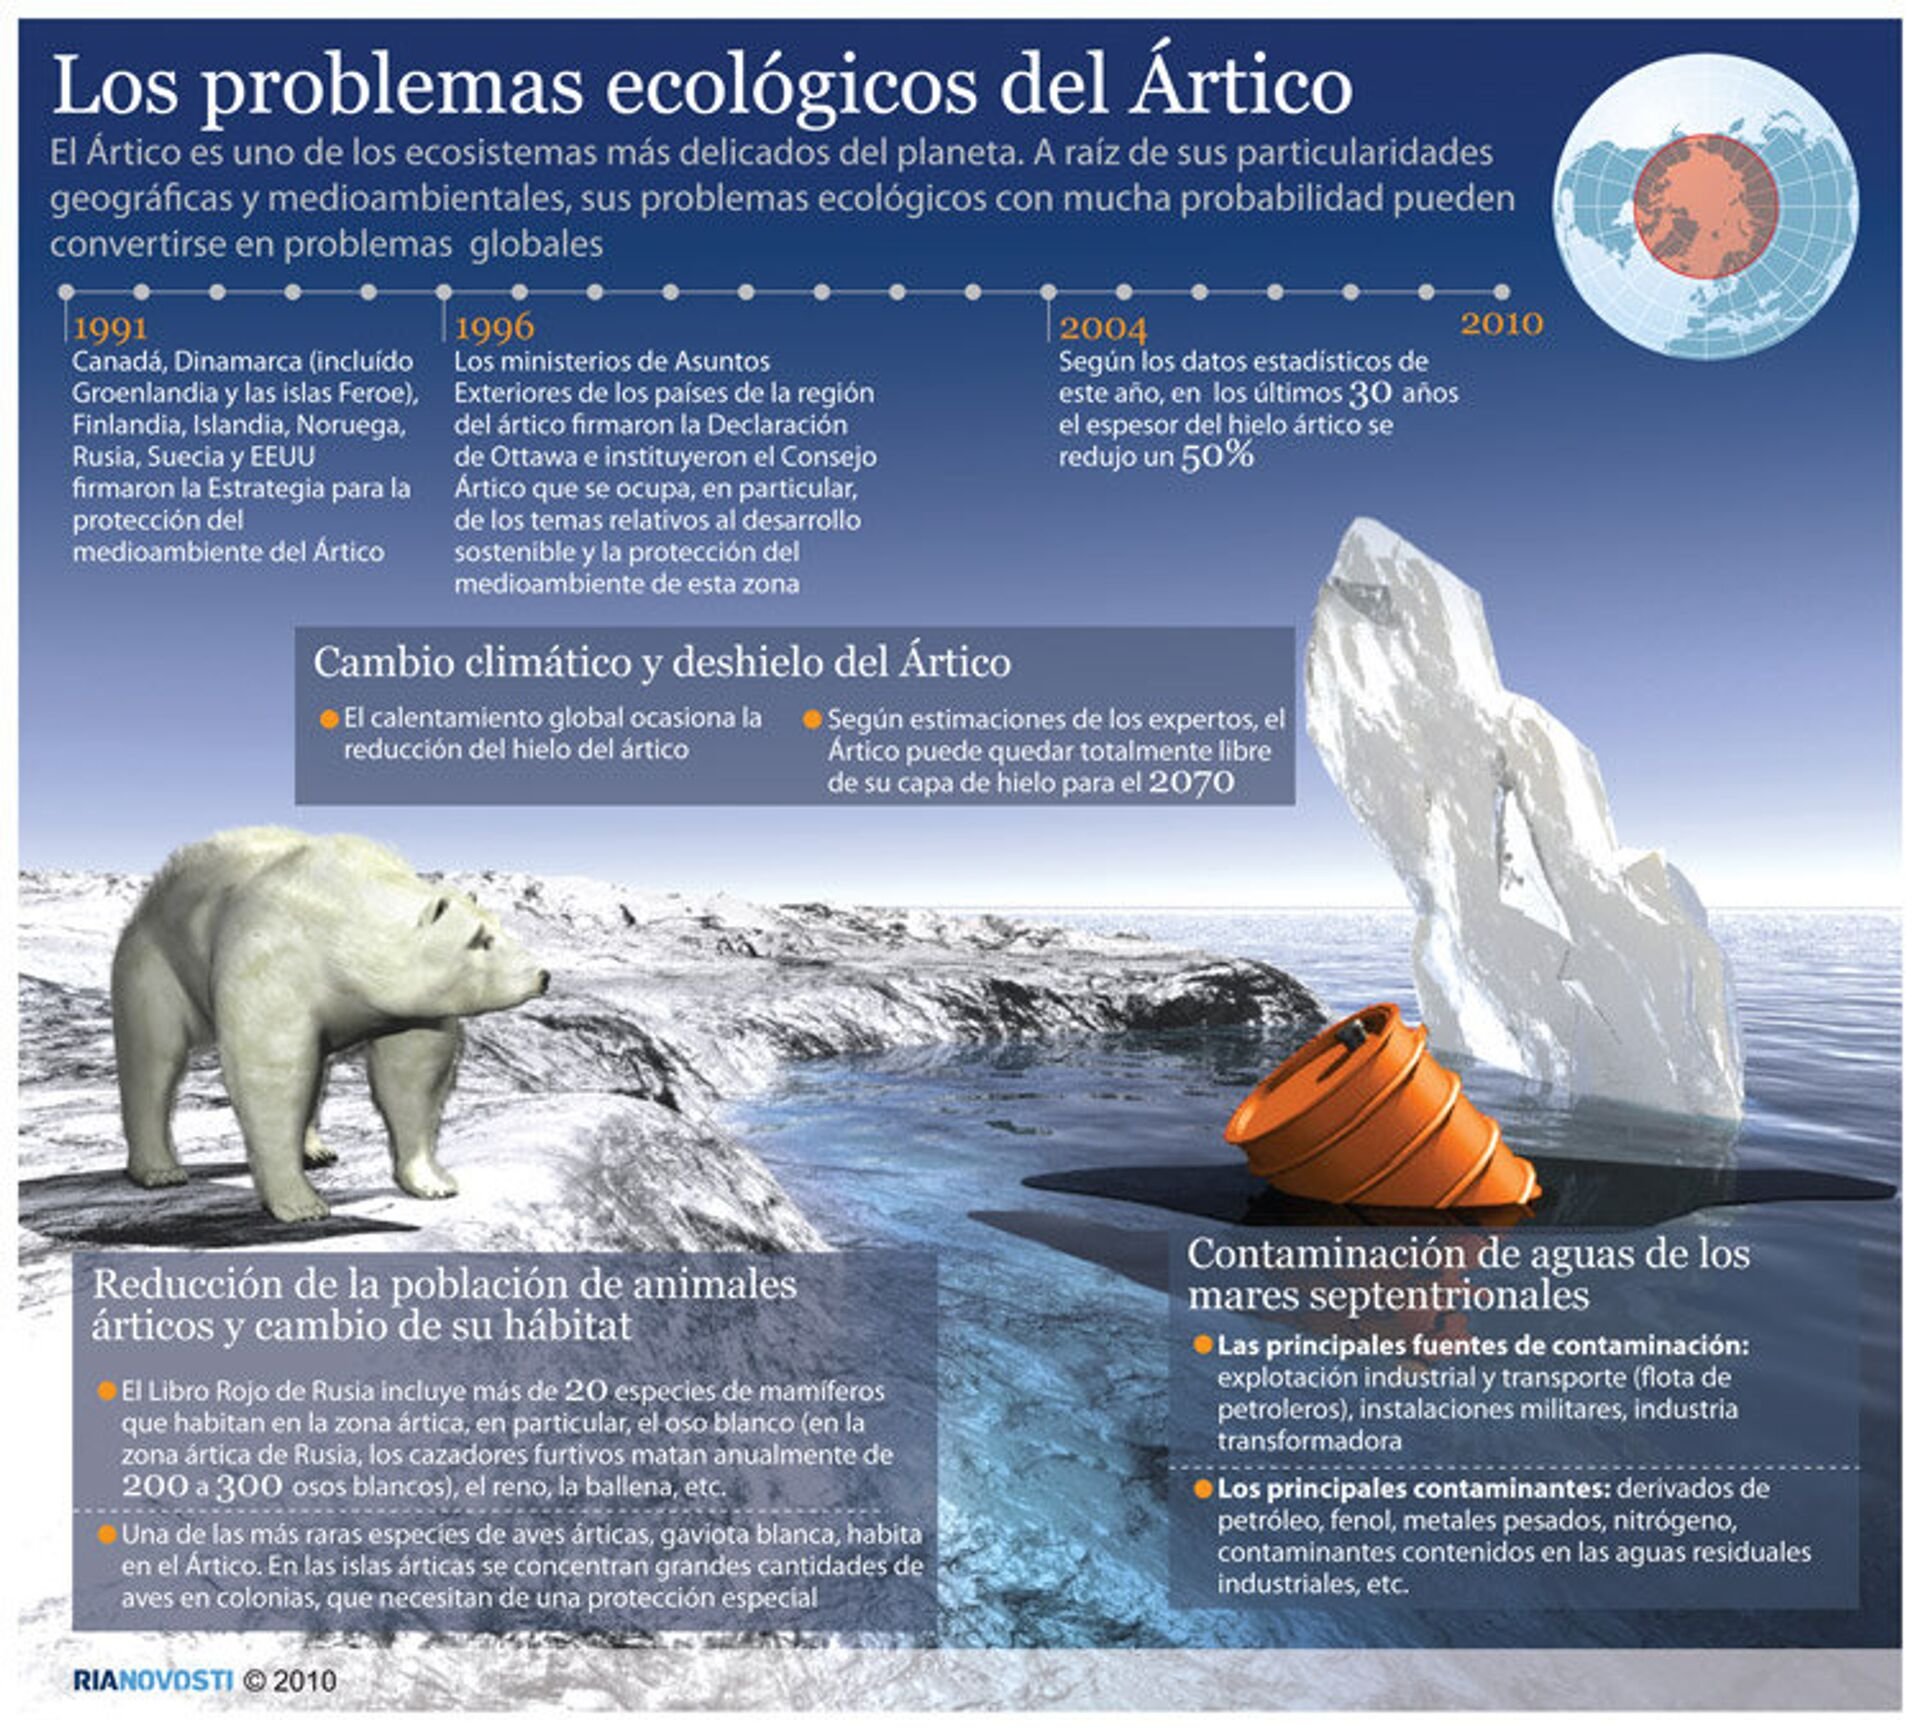 Как глобальное потепление изменит нашу жизнь. Экологические проблемы Арктики карта. Экологические проблемы и охрана природы Арктики. Экологические проблемы Арктики. Экологические проблемы аркимуи.